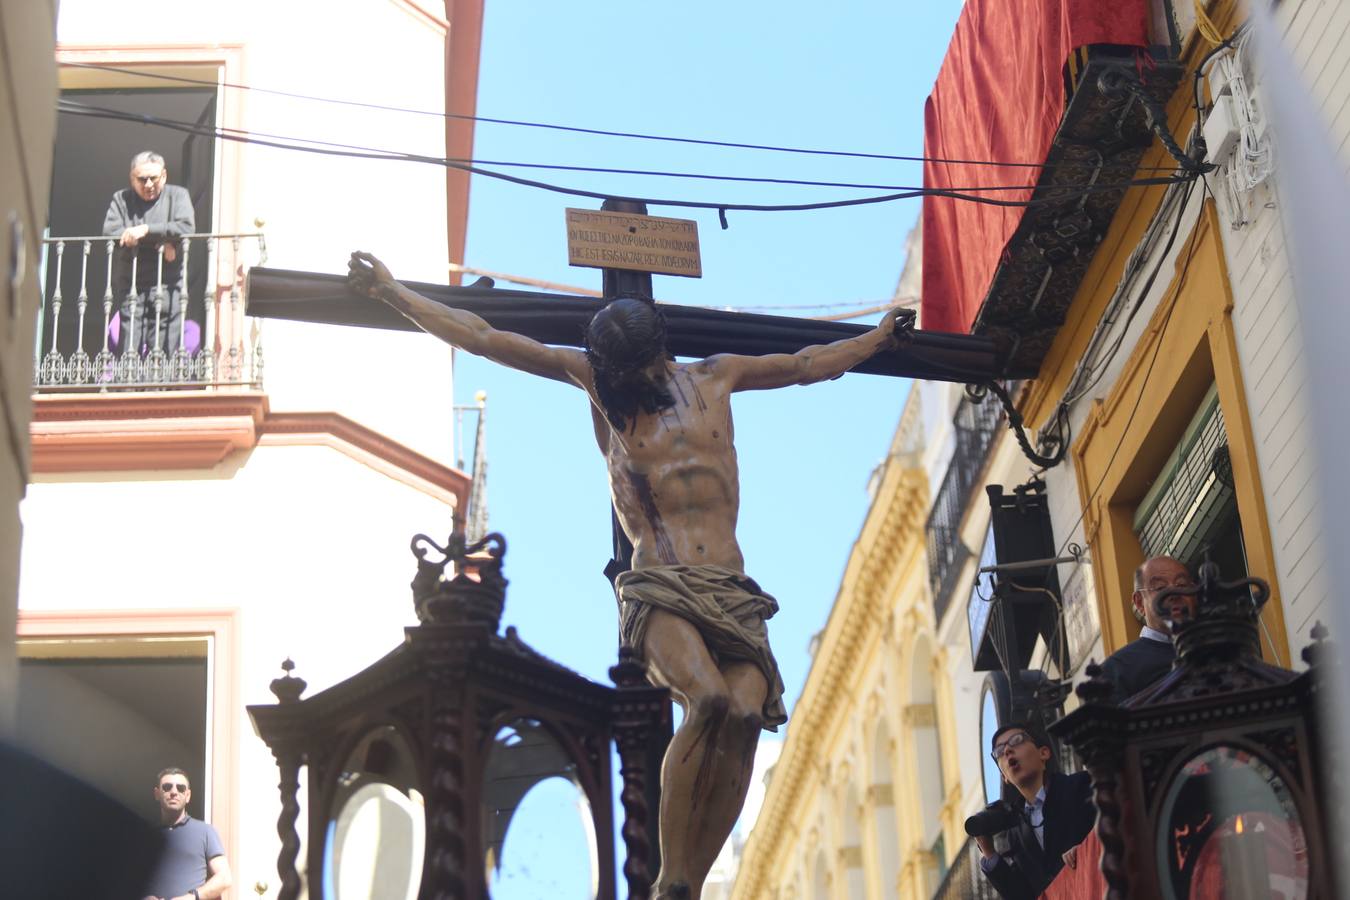 En fotos, la Hermandad de Los Negritos celebra este Jueves Santo el 625º Aniversario de sus orígenes - Semana Santa Sevilla 2018